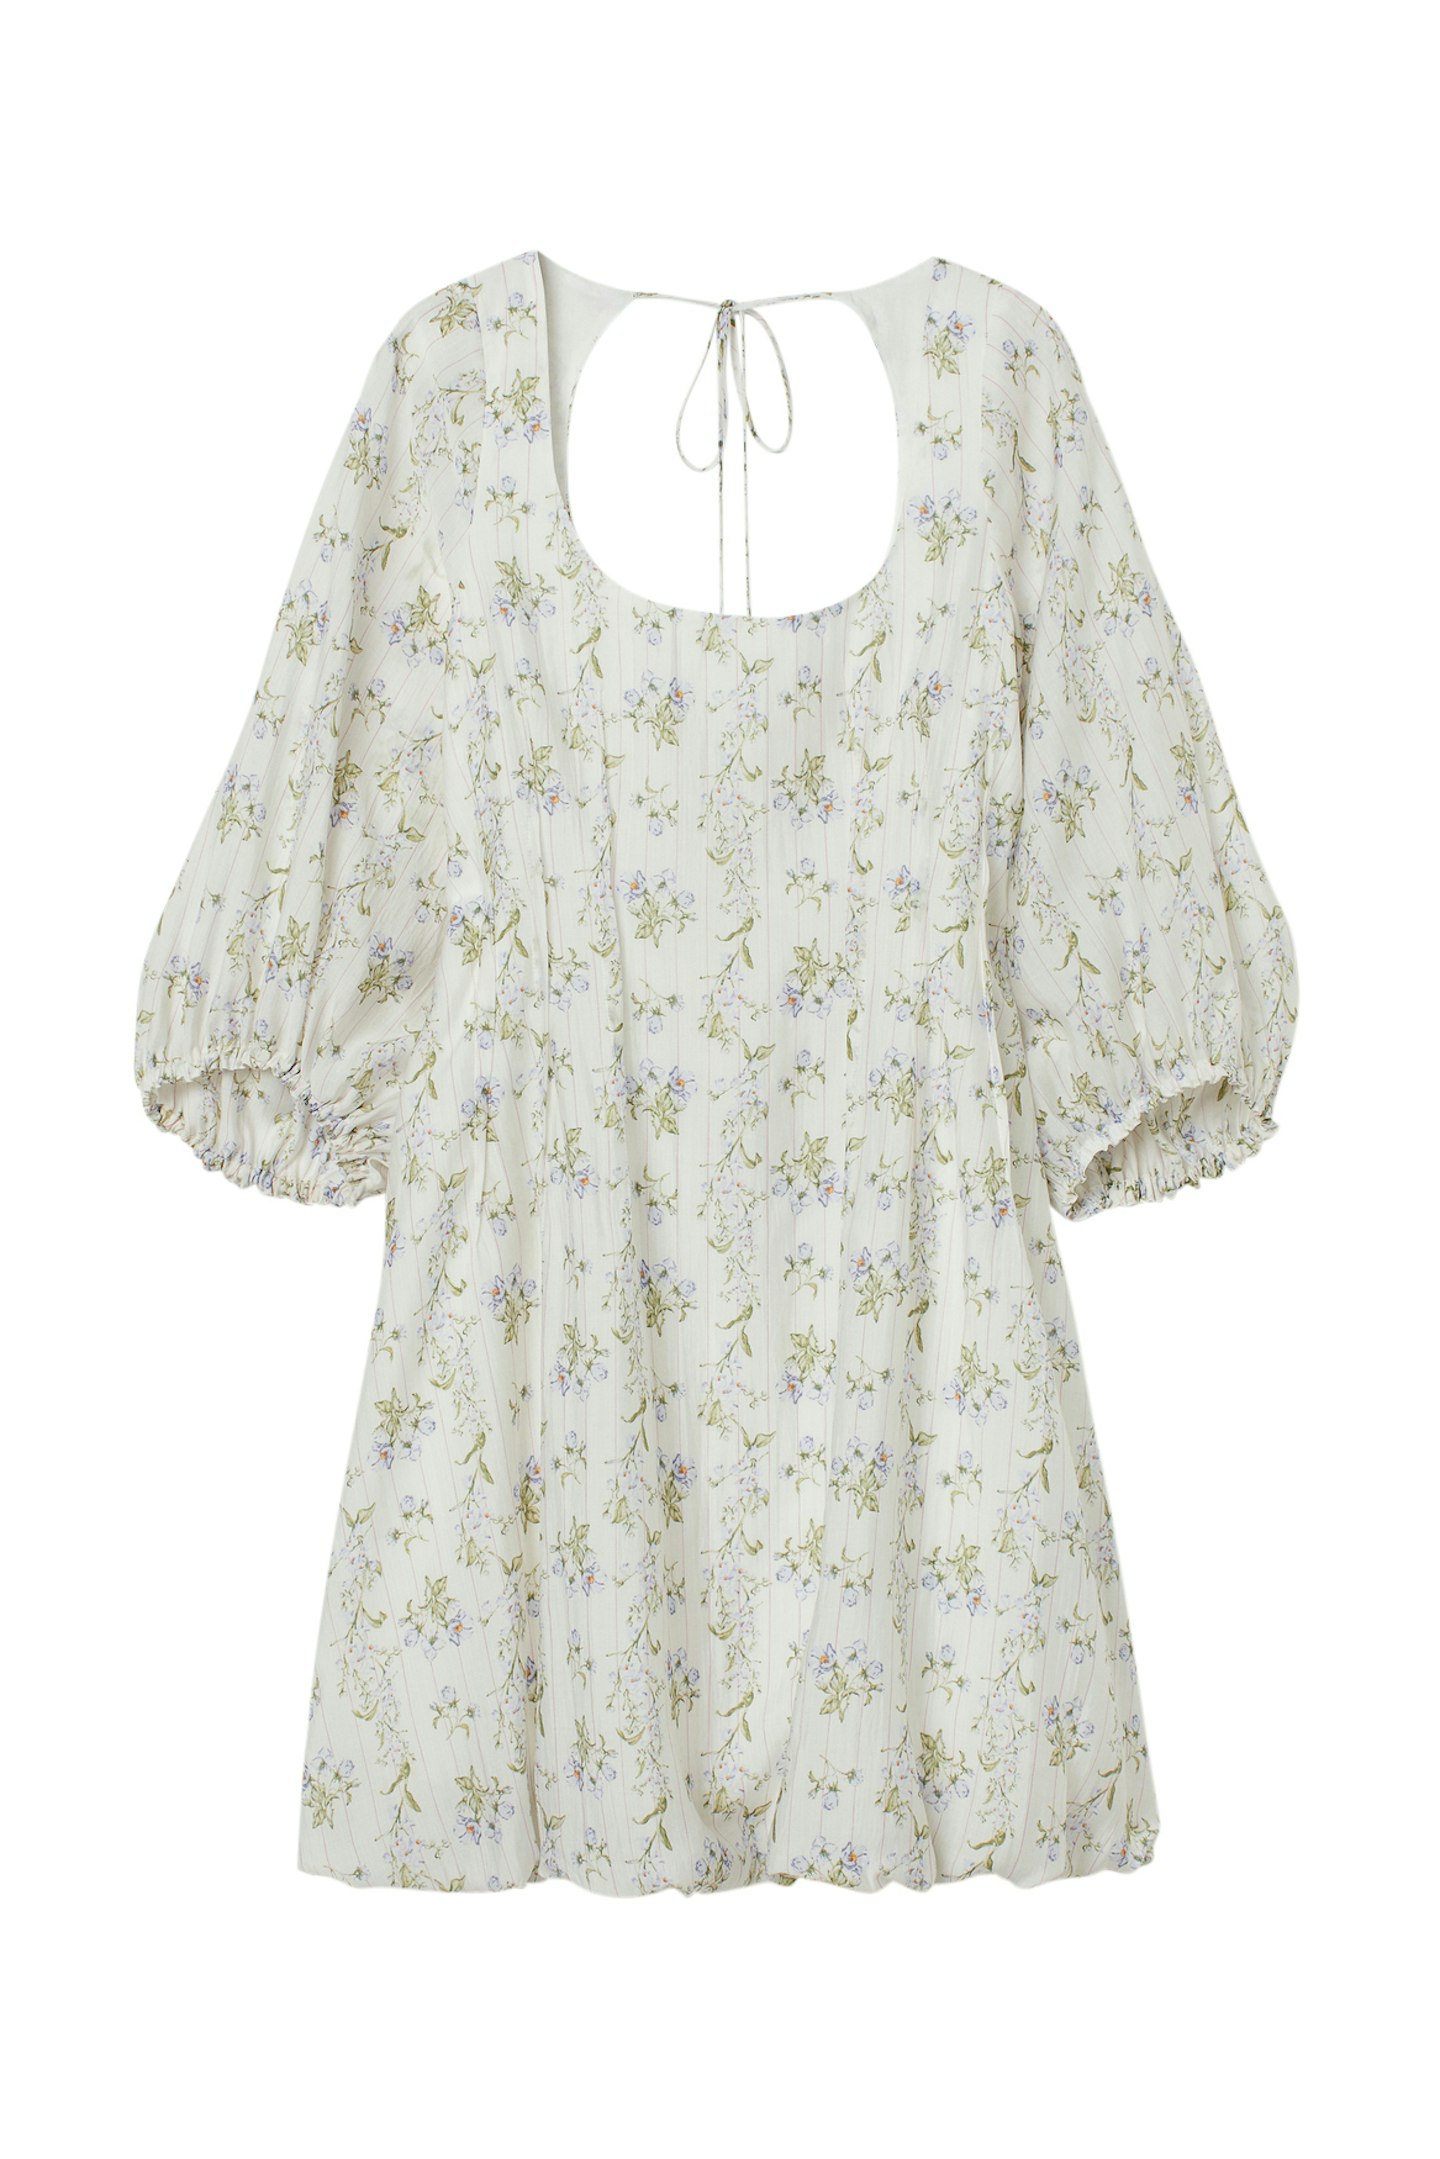 Long Sleeved Dress, £29.99